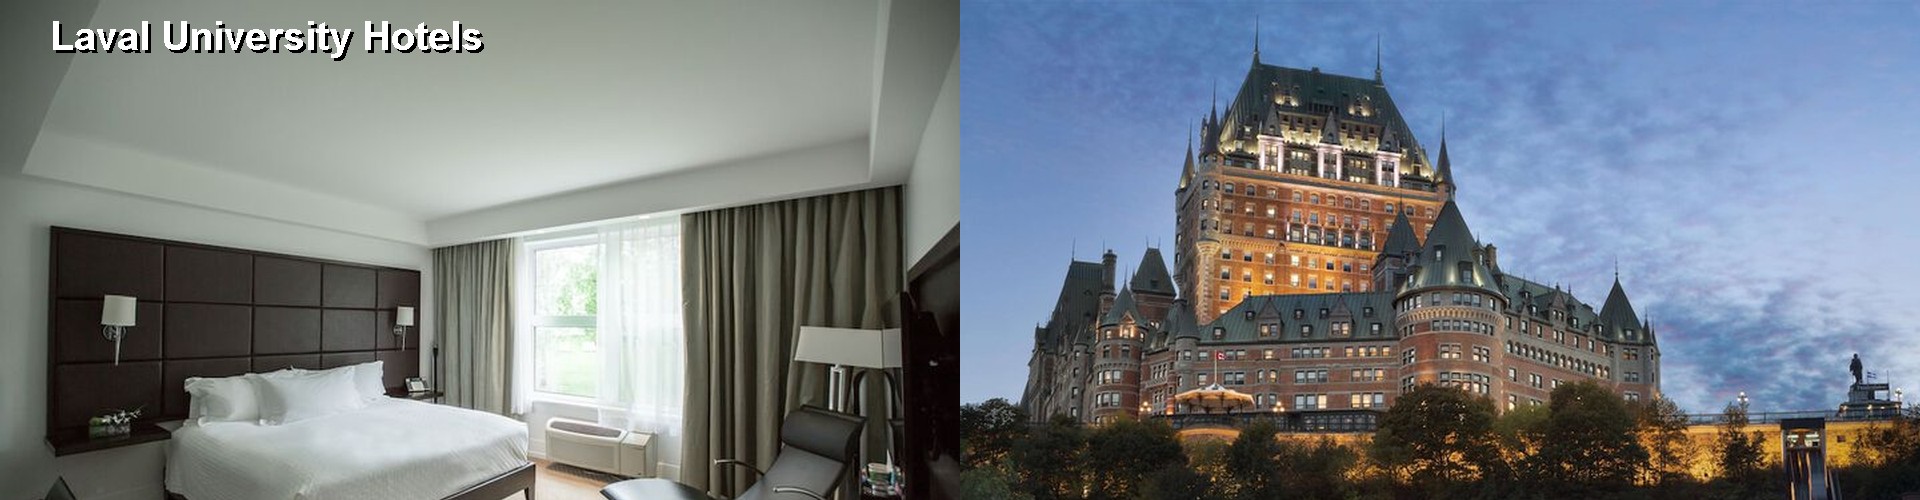 5 Best Hotels near Laval University